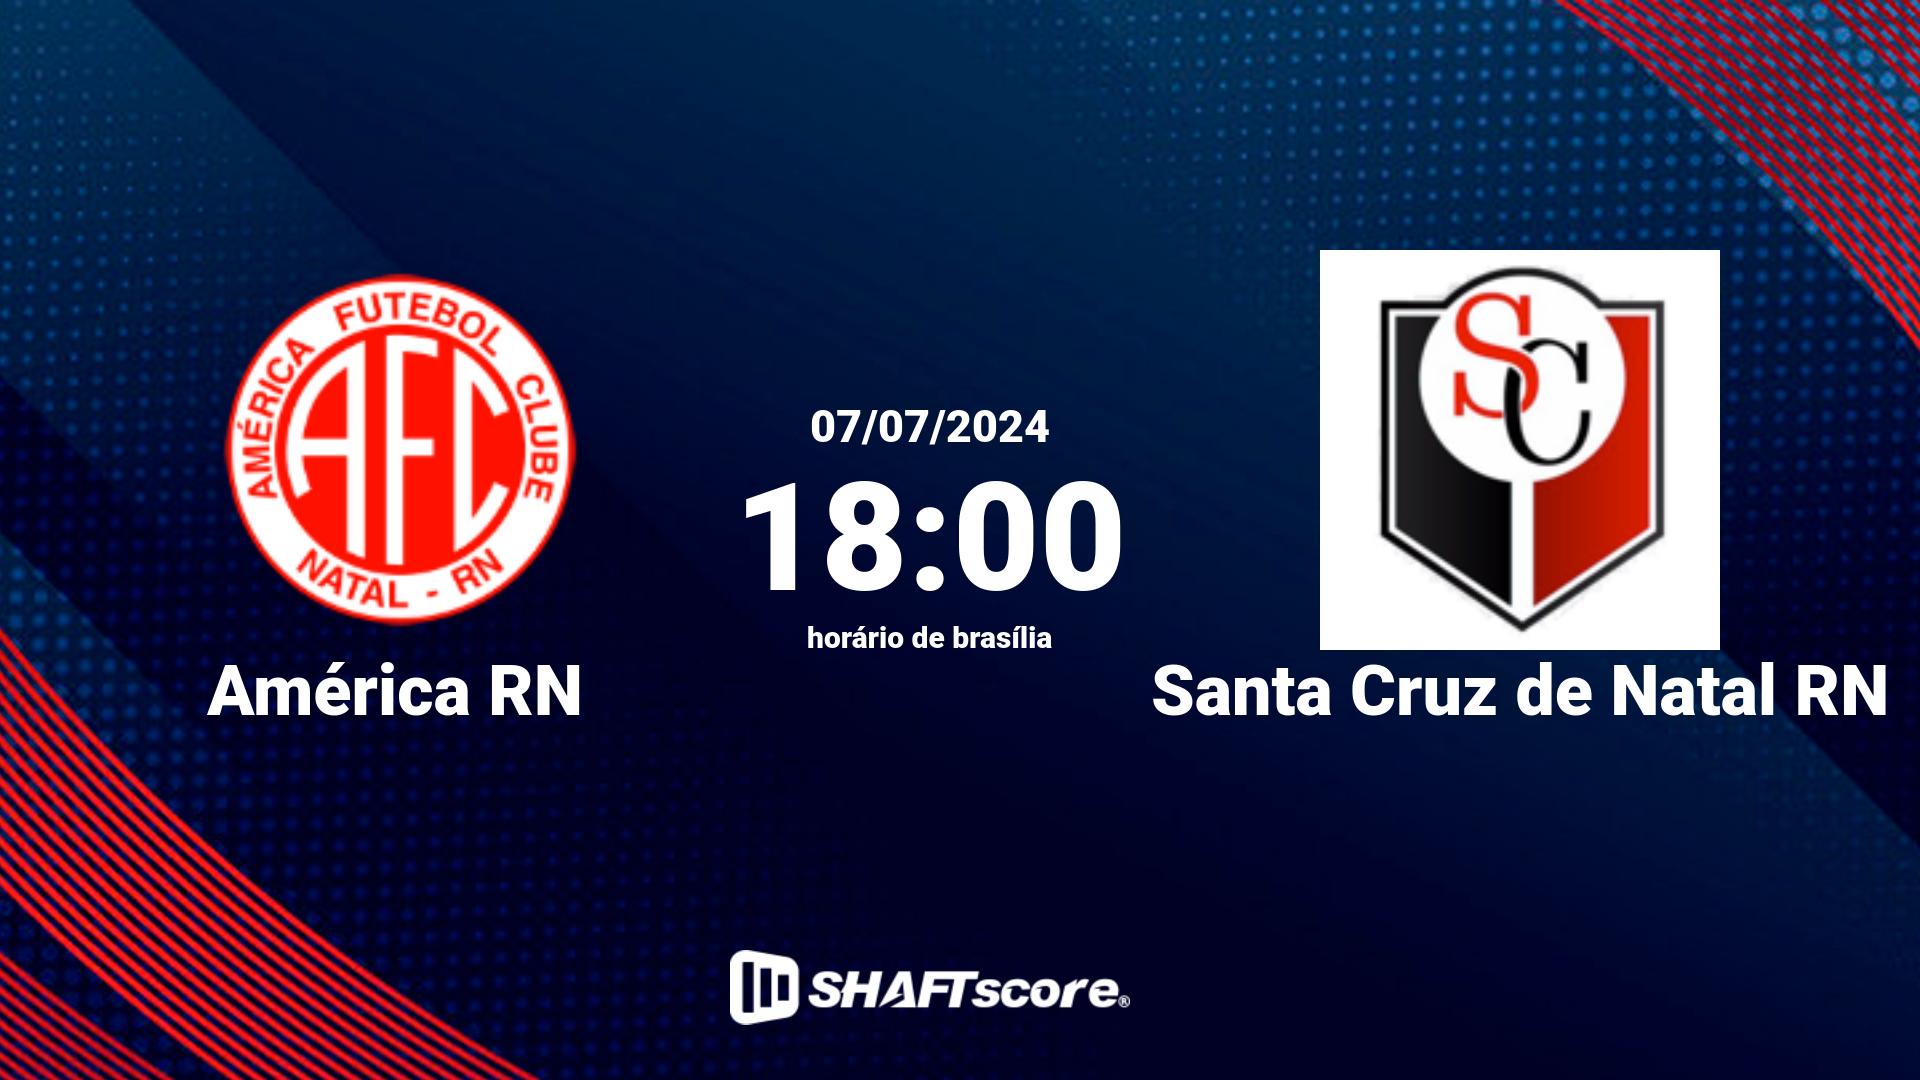 Estatísticas do jogo América RN vs Santa Cruz de Natal RN 07.07 18:00